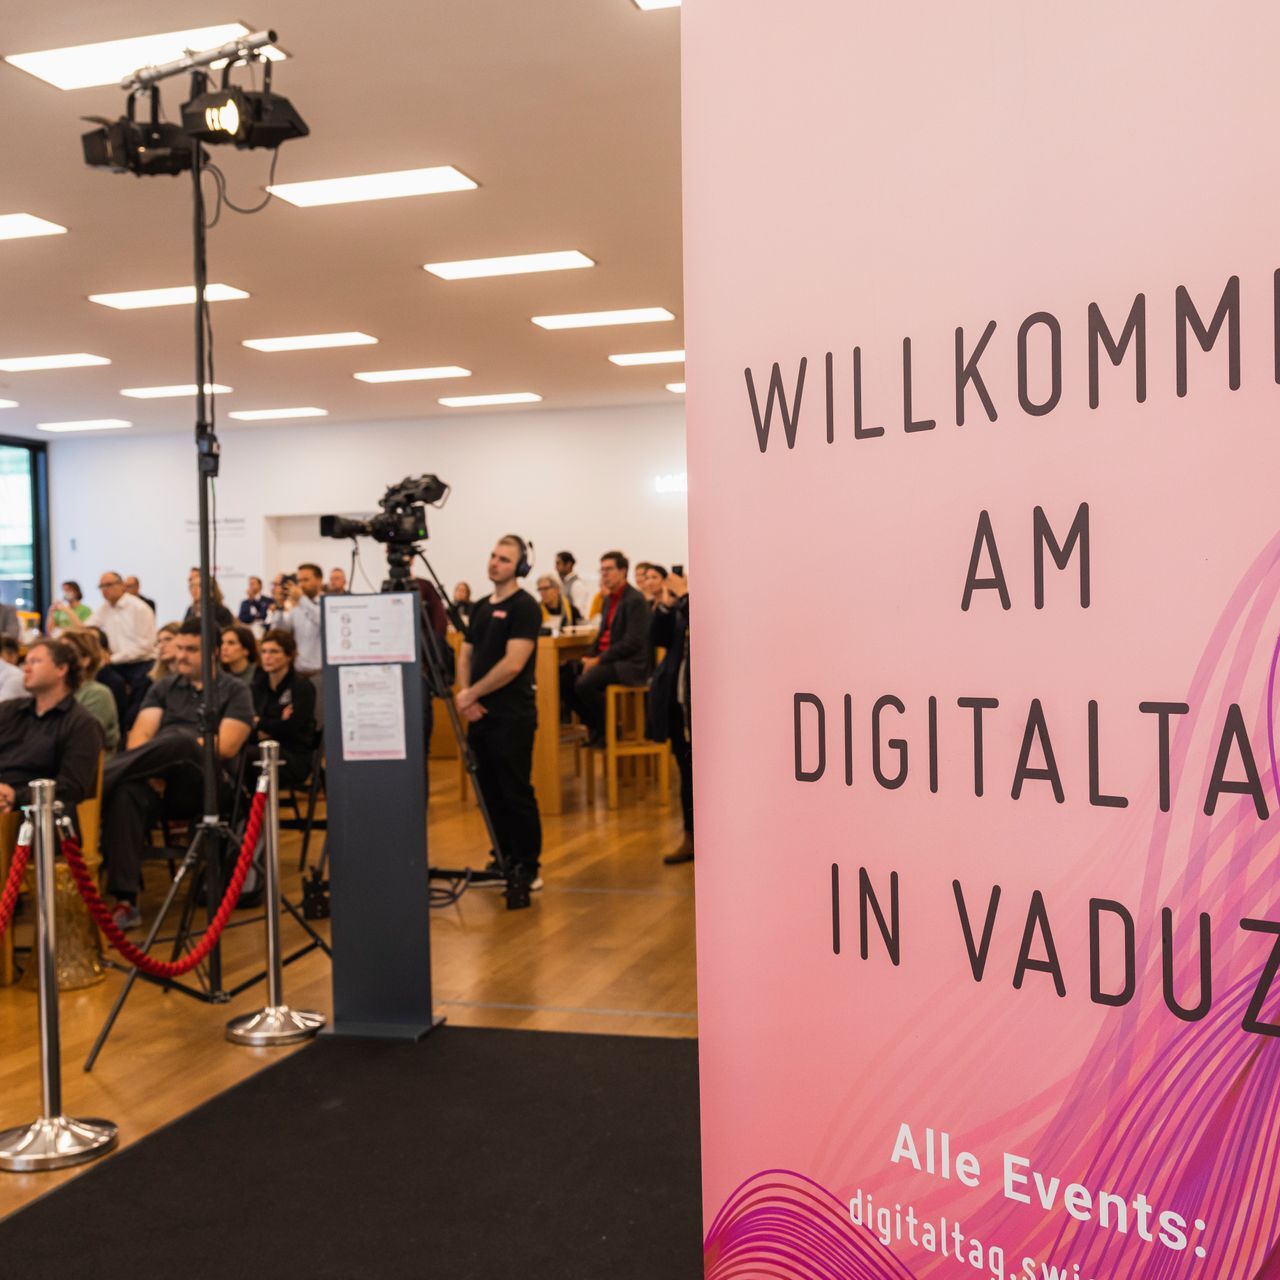 Το "Digitaltag Vaduz", το οποίο υποδέχτηκε το Kunstmuseum της πρωτεύουσας του Πριγκιπάτου του Λιχτενστάιν το Σάββατο 6 Νοεμβρίου 2021, προκάλεσε τον ενθουσιασμό του κοινού και των ομιλητών σε αναλογία με την "Ψηφιακή Ημέρα Ελβετίας" της επόμενης 10ης ημέρας